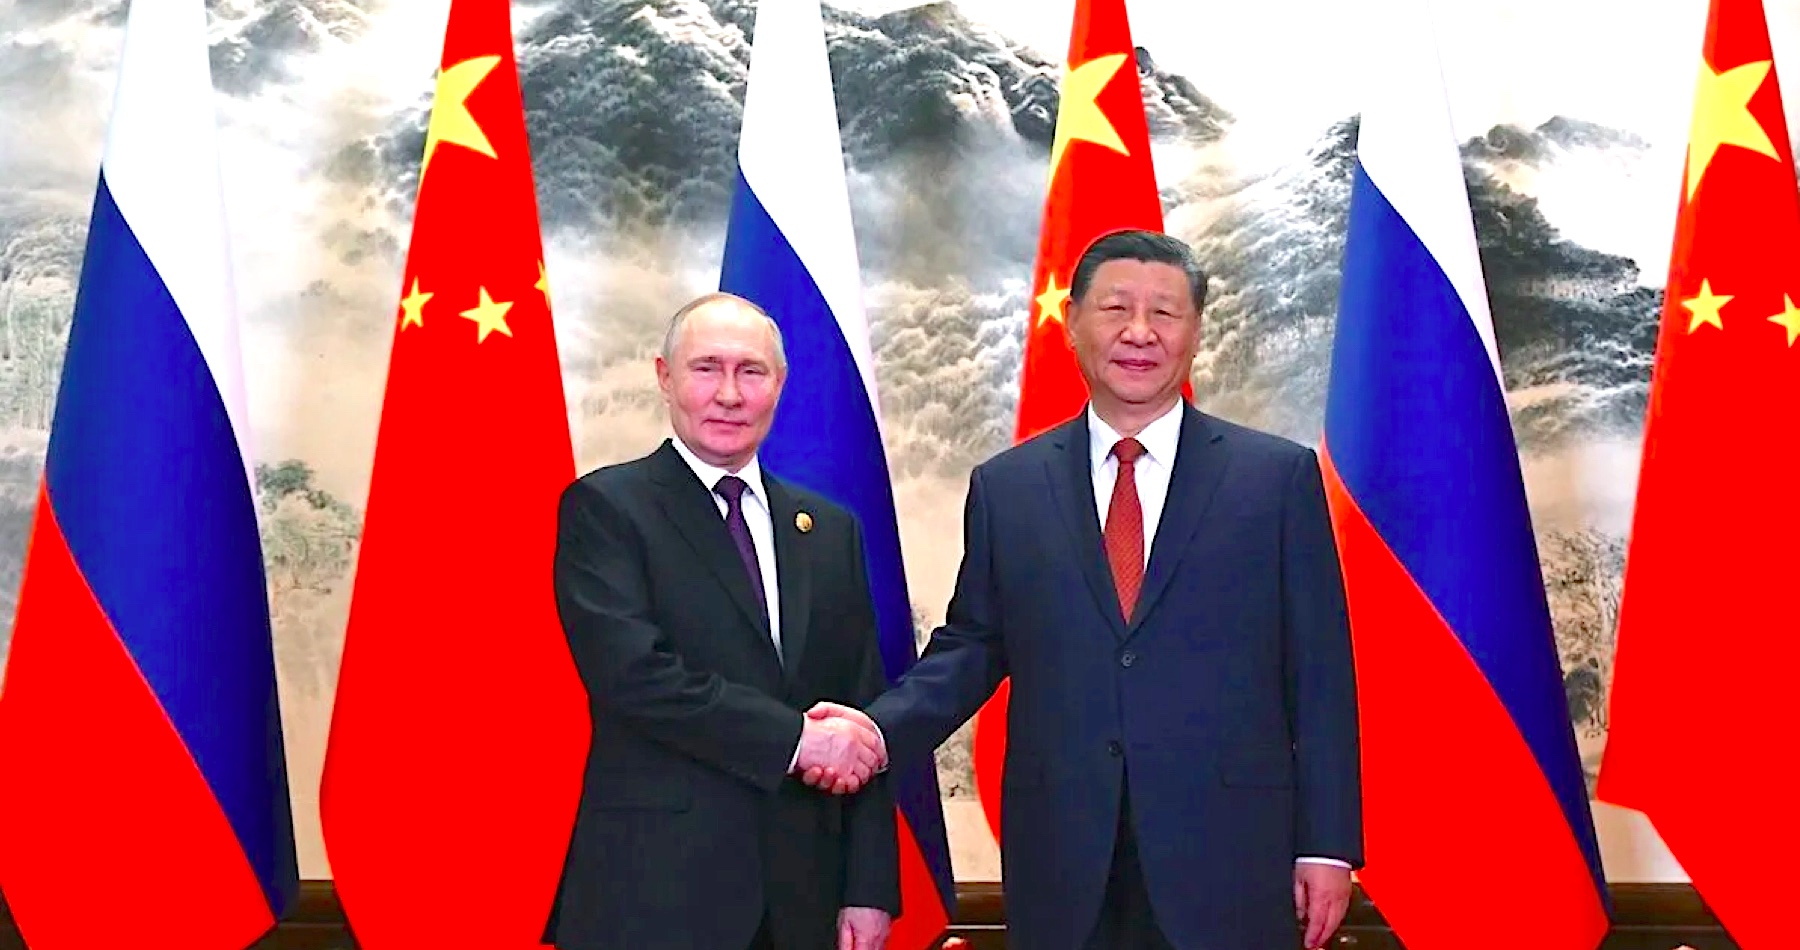 VIDEO: Si Ťin-pching rokoval s Putinom o upevnení vzťahov a spolupráce medzi Čínou a Ruskom. „Spoločne bránime zásady spravodlivosti a demokratického svetového poriadku založeného na multipolarite a medzinárodnom práve,“ vyhlásil ruský prezident. Čínsky líder sa so šéfom Kremľa zhodol na potrebe dosiahnuť politické riešenie konfliktu na Ukrajine